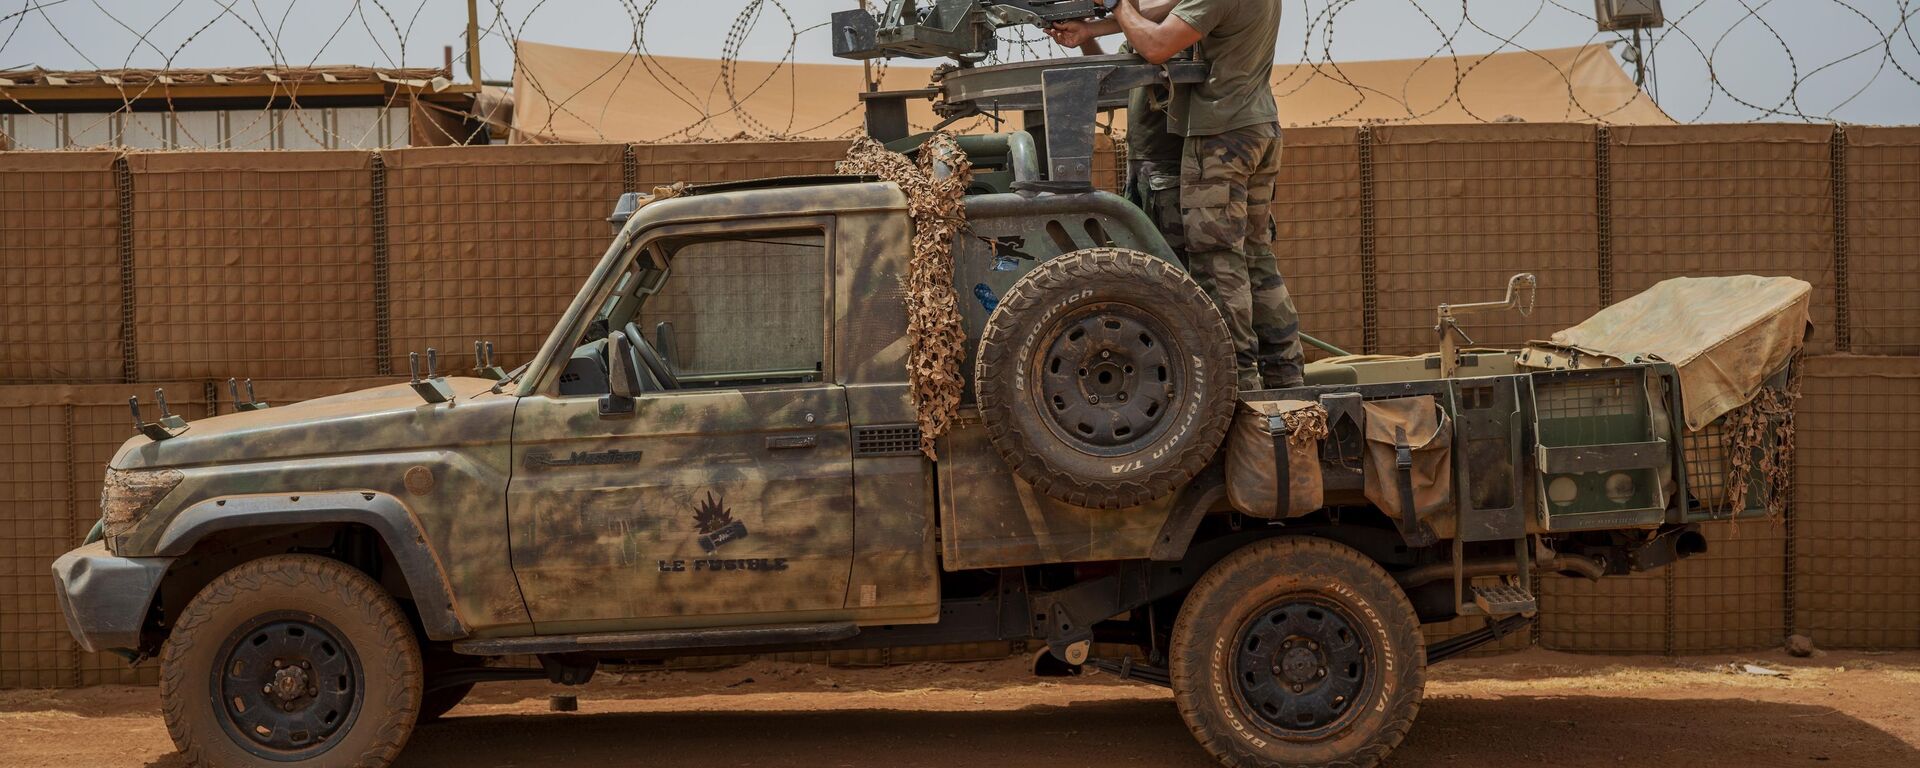 Soldados da força francesa da operação Barkhane montam uma metralhadora em uma picape camuflada enquanto trabalhadores do Mali passam antes de partir em uma missão de sua base em Gao, Mali, 7 de junho de 2021 - Sputnik Brasil, 1920, 25.01.2022